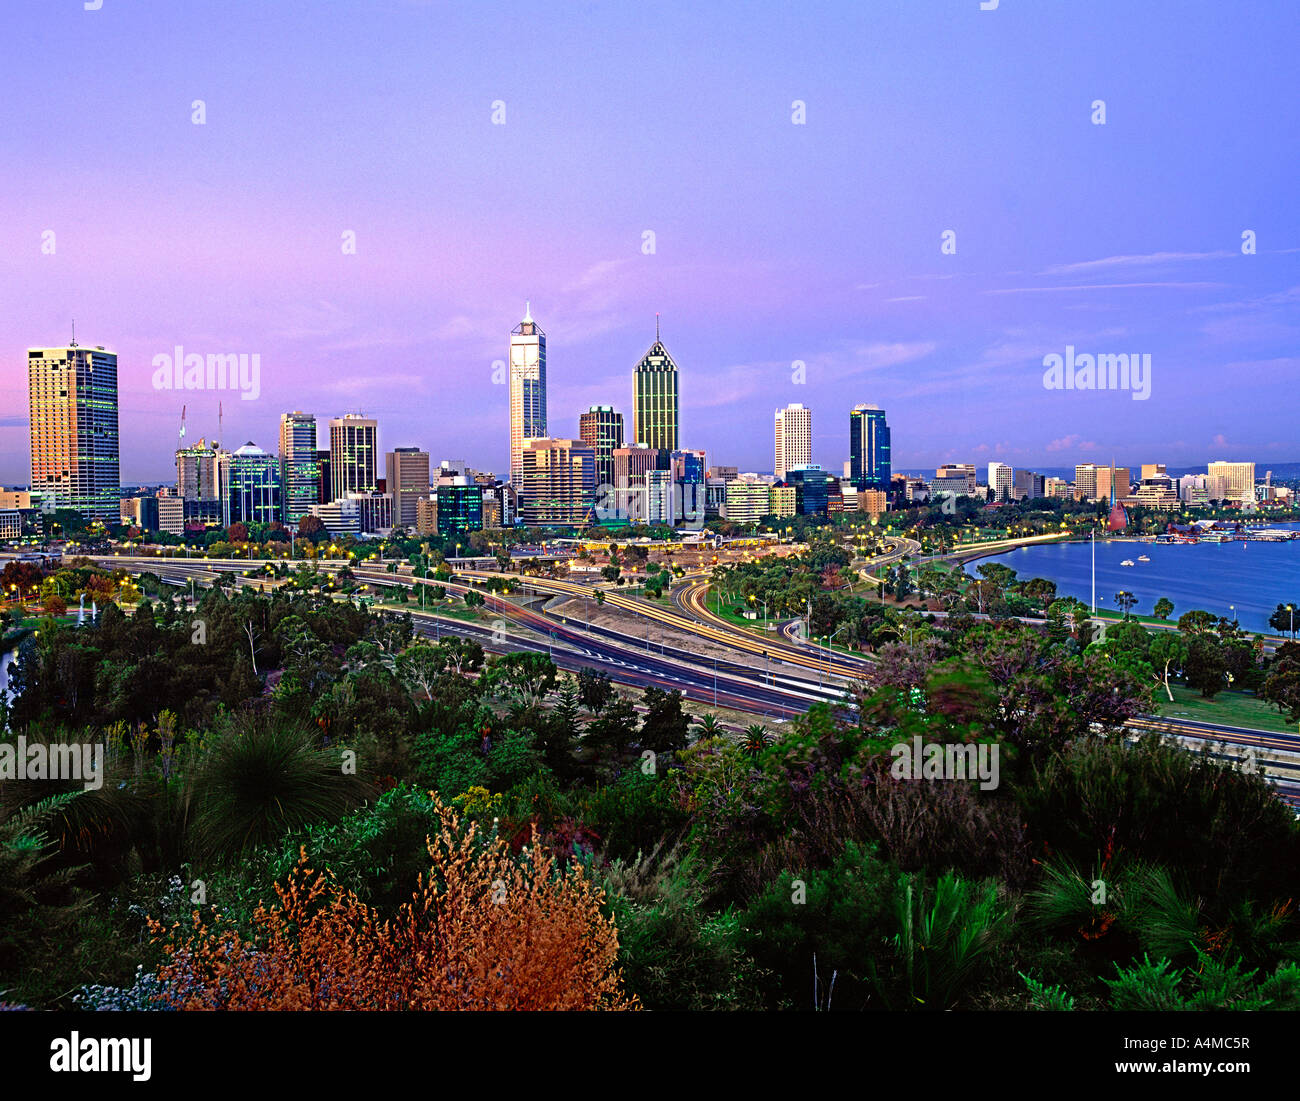 Le Perth skyline at Dusk. Perth est la capitale de l'ouest de l'Australie. Photographié sur 6X7 de film. Banque D'Images